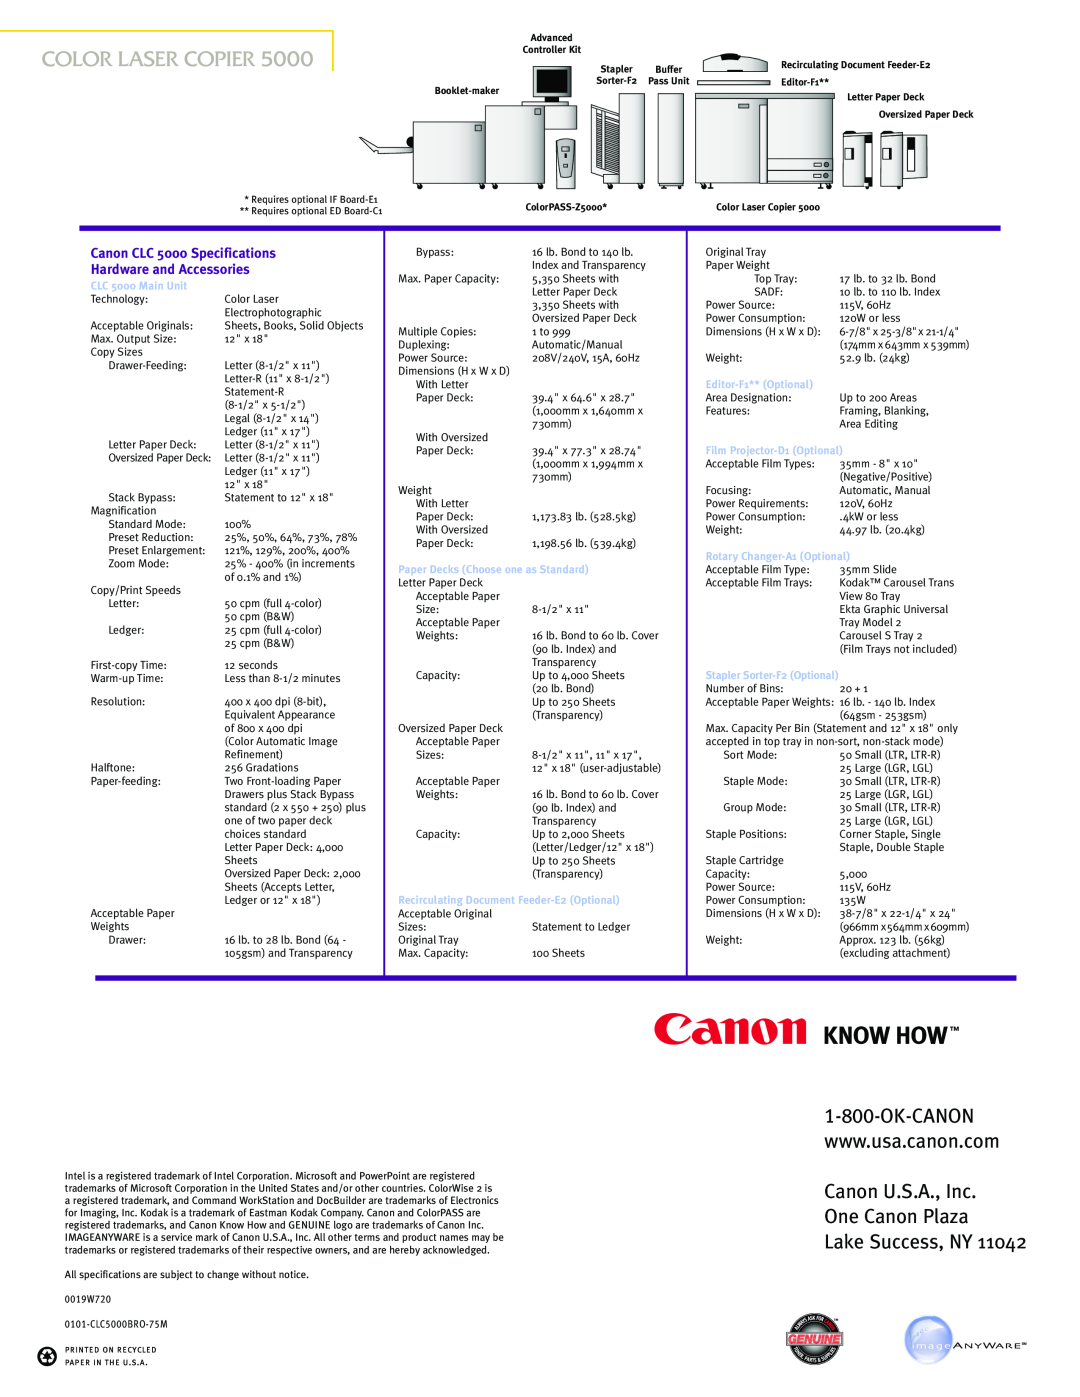 Canon 55E manual Canon U.S.A., Inc One Canon Plaza Lake Success, NY, Canon CLC 5000 Specifications Hardware and Accessories 